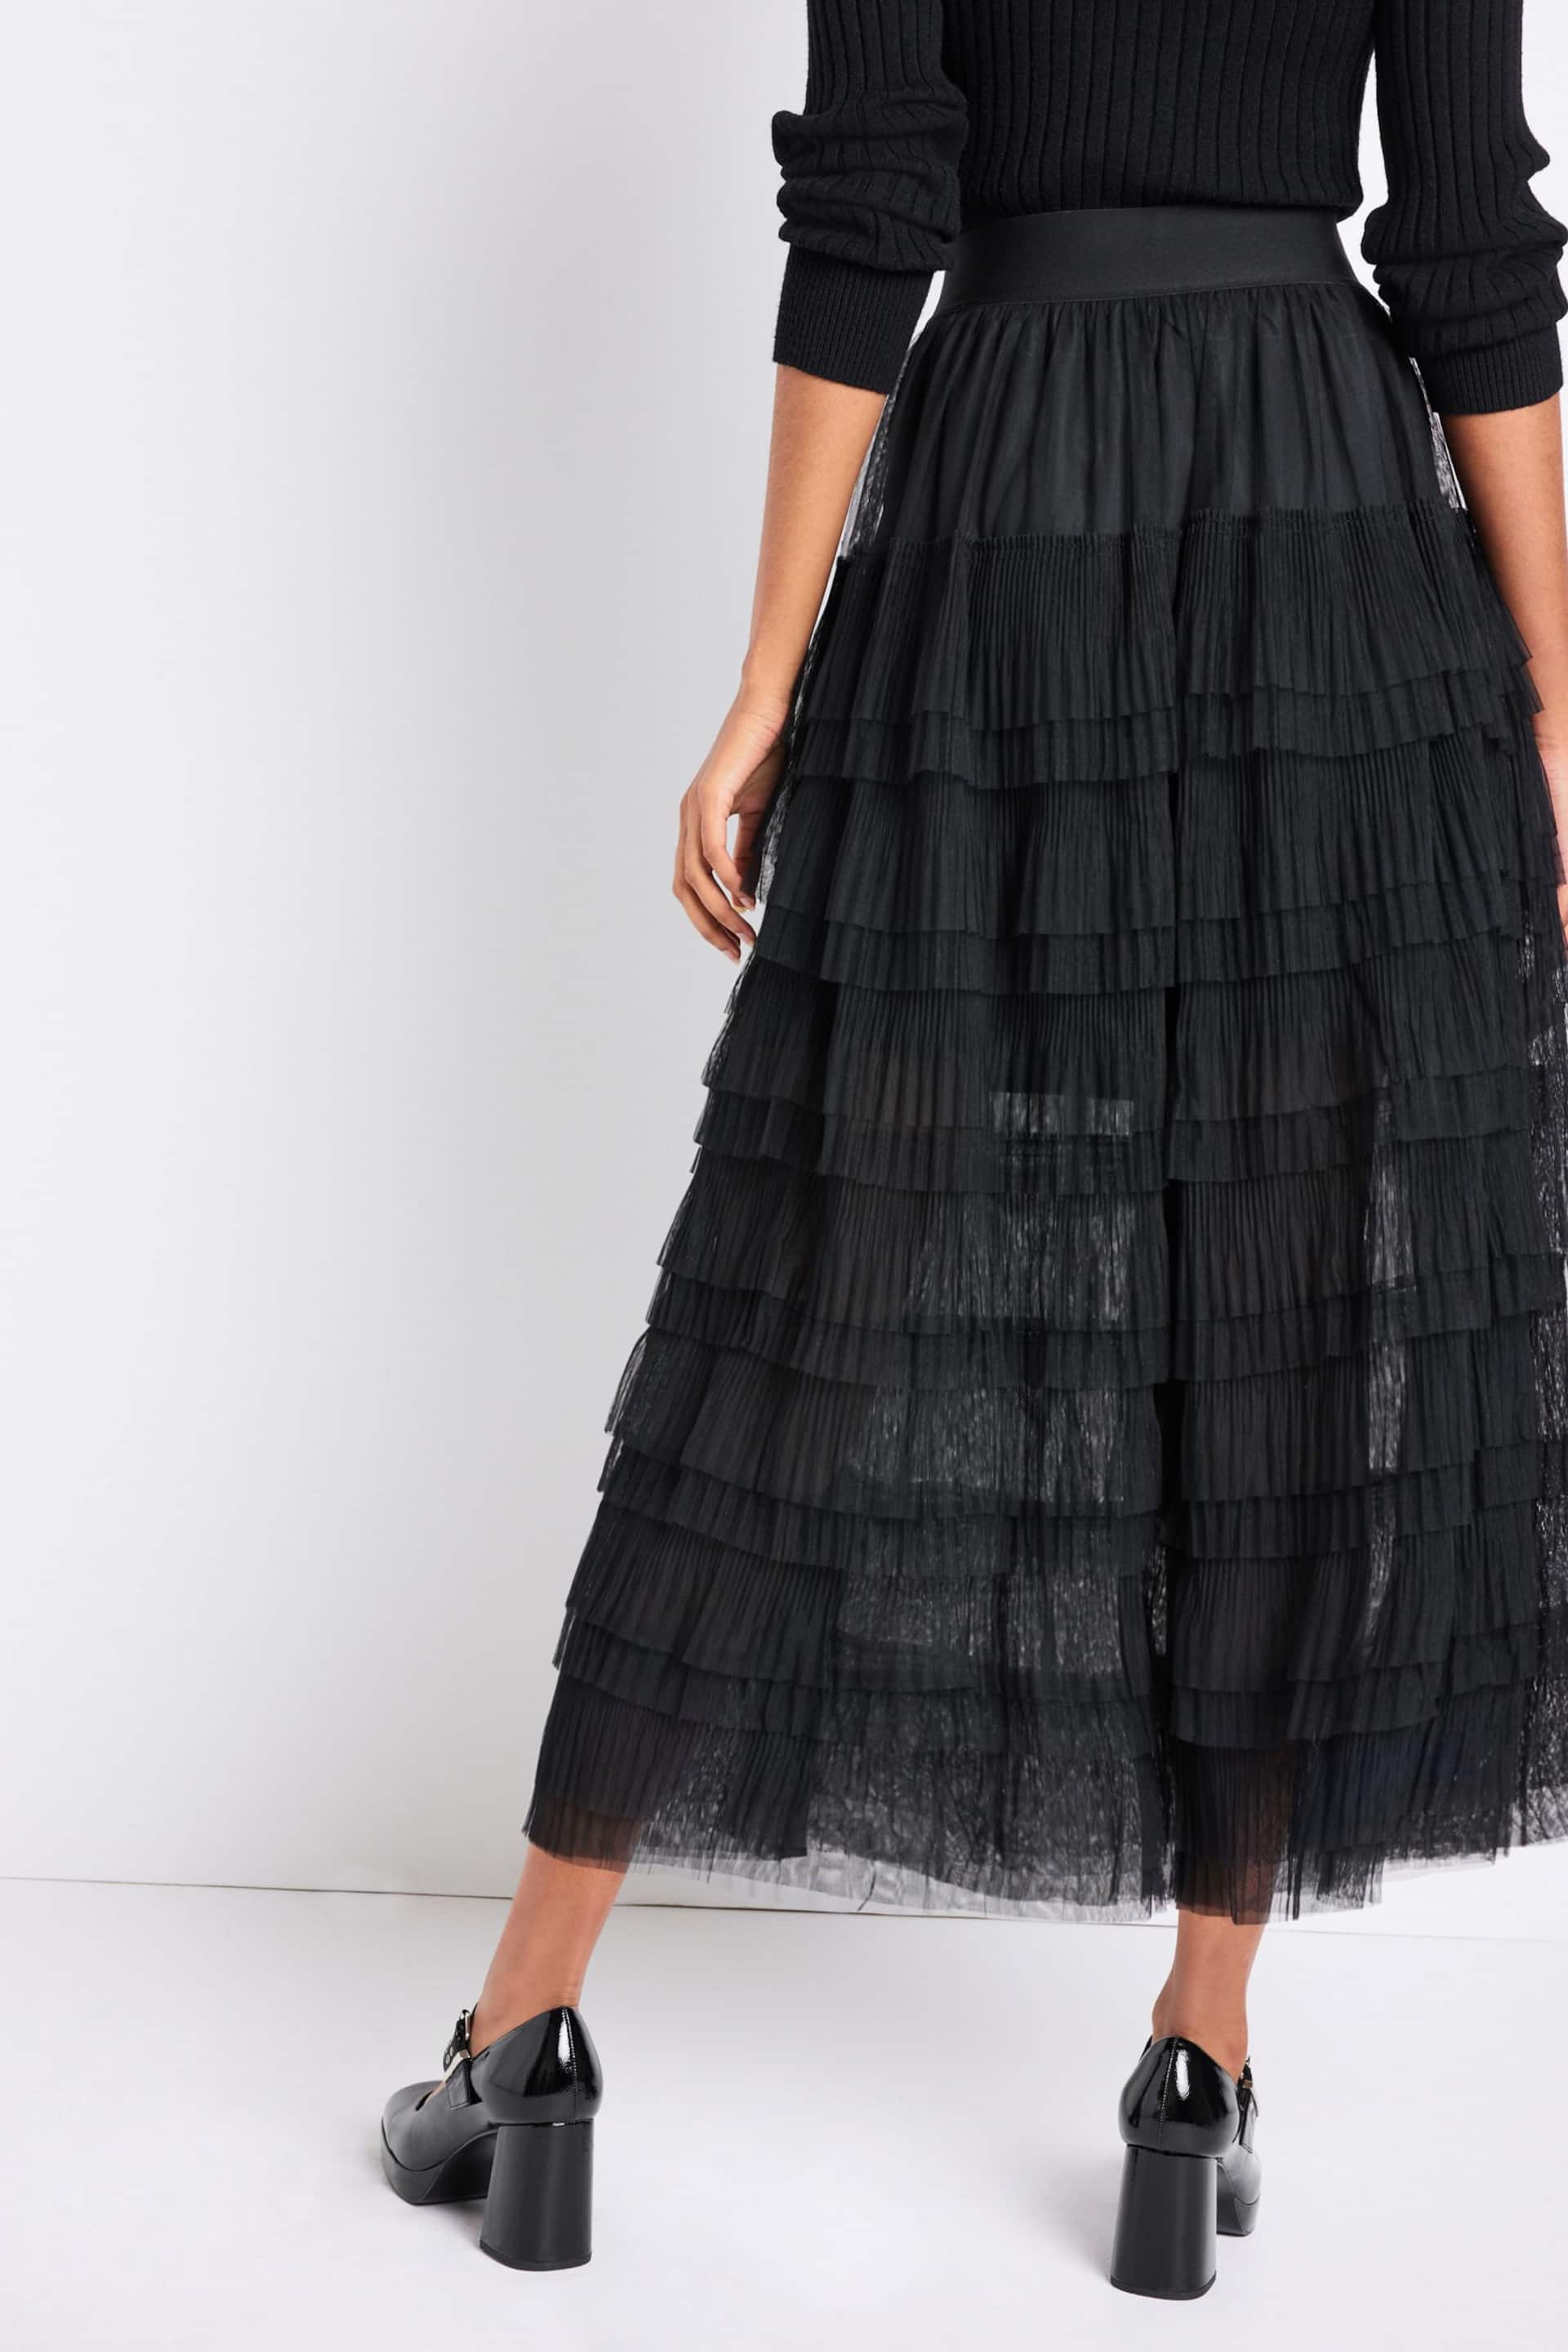 Black Mesh Tulle Midi Skirt - Image 4 of 7